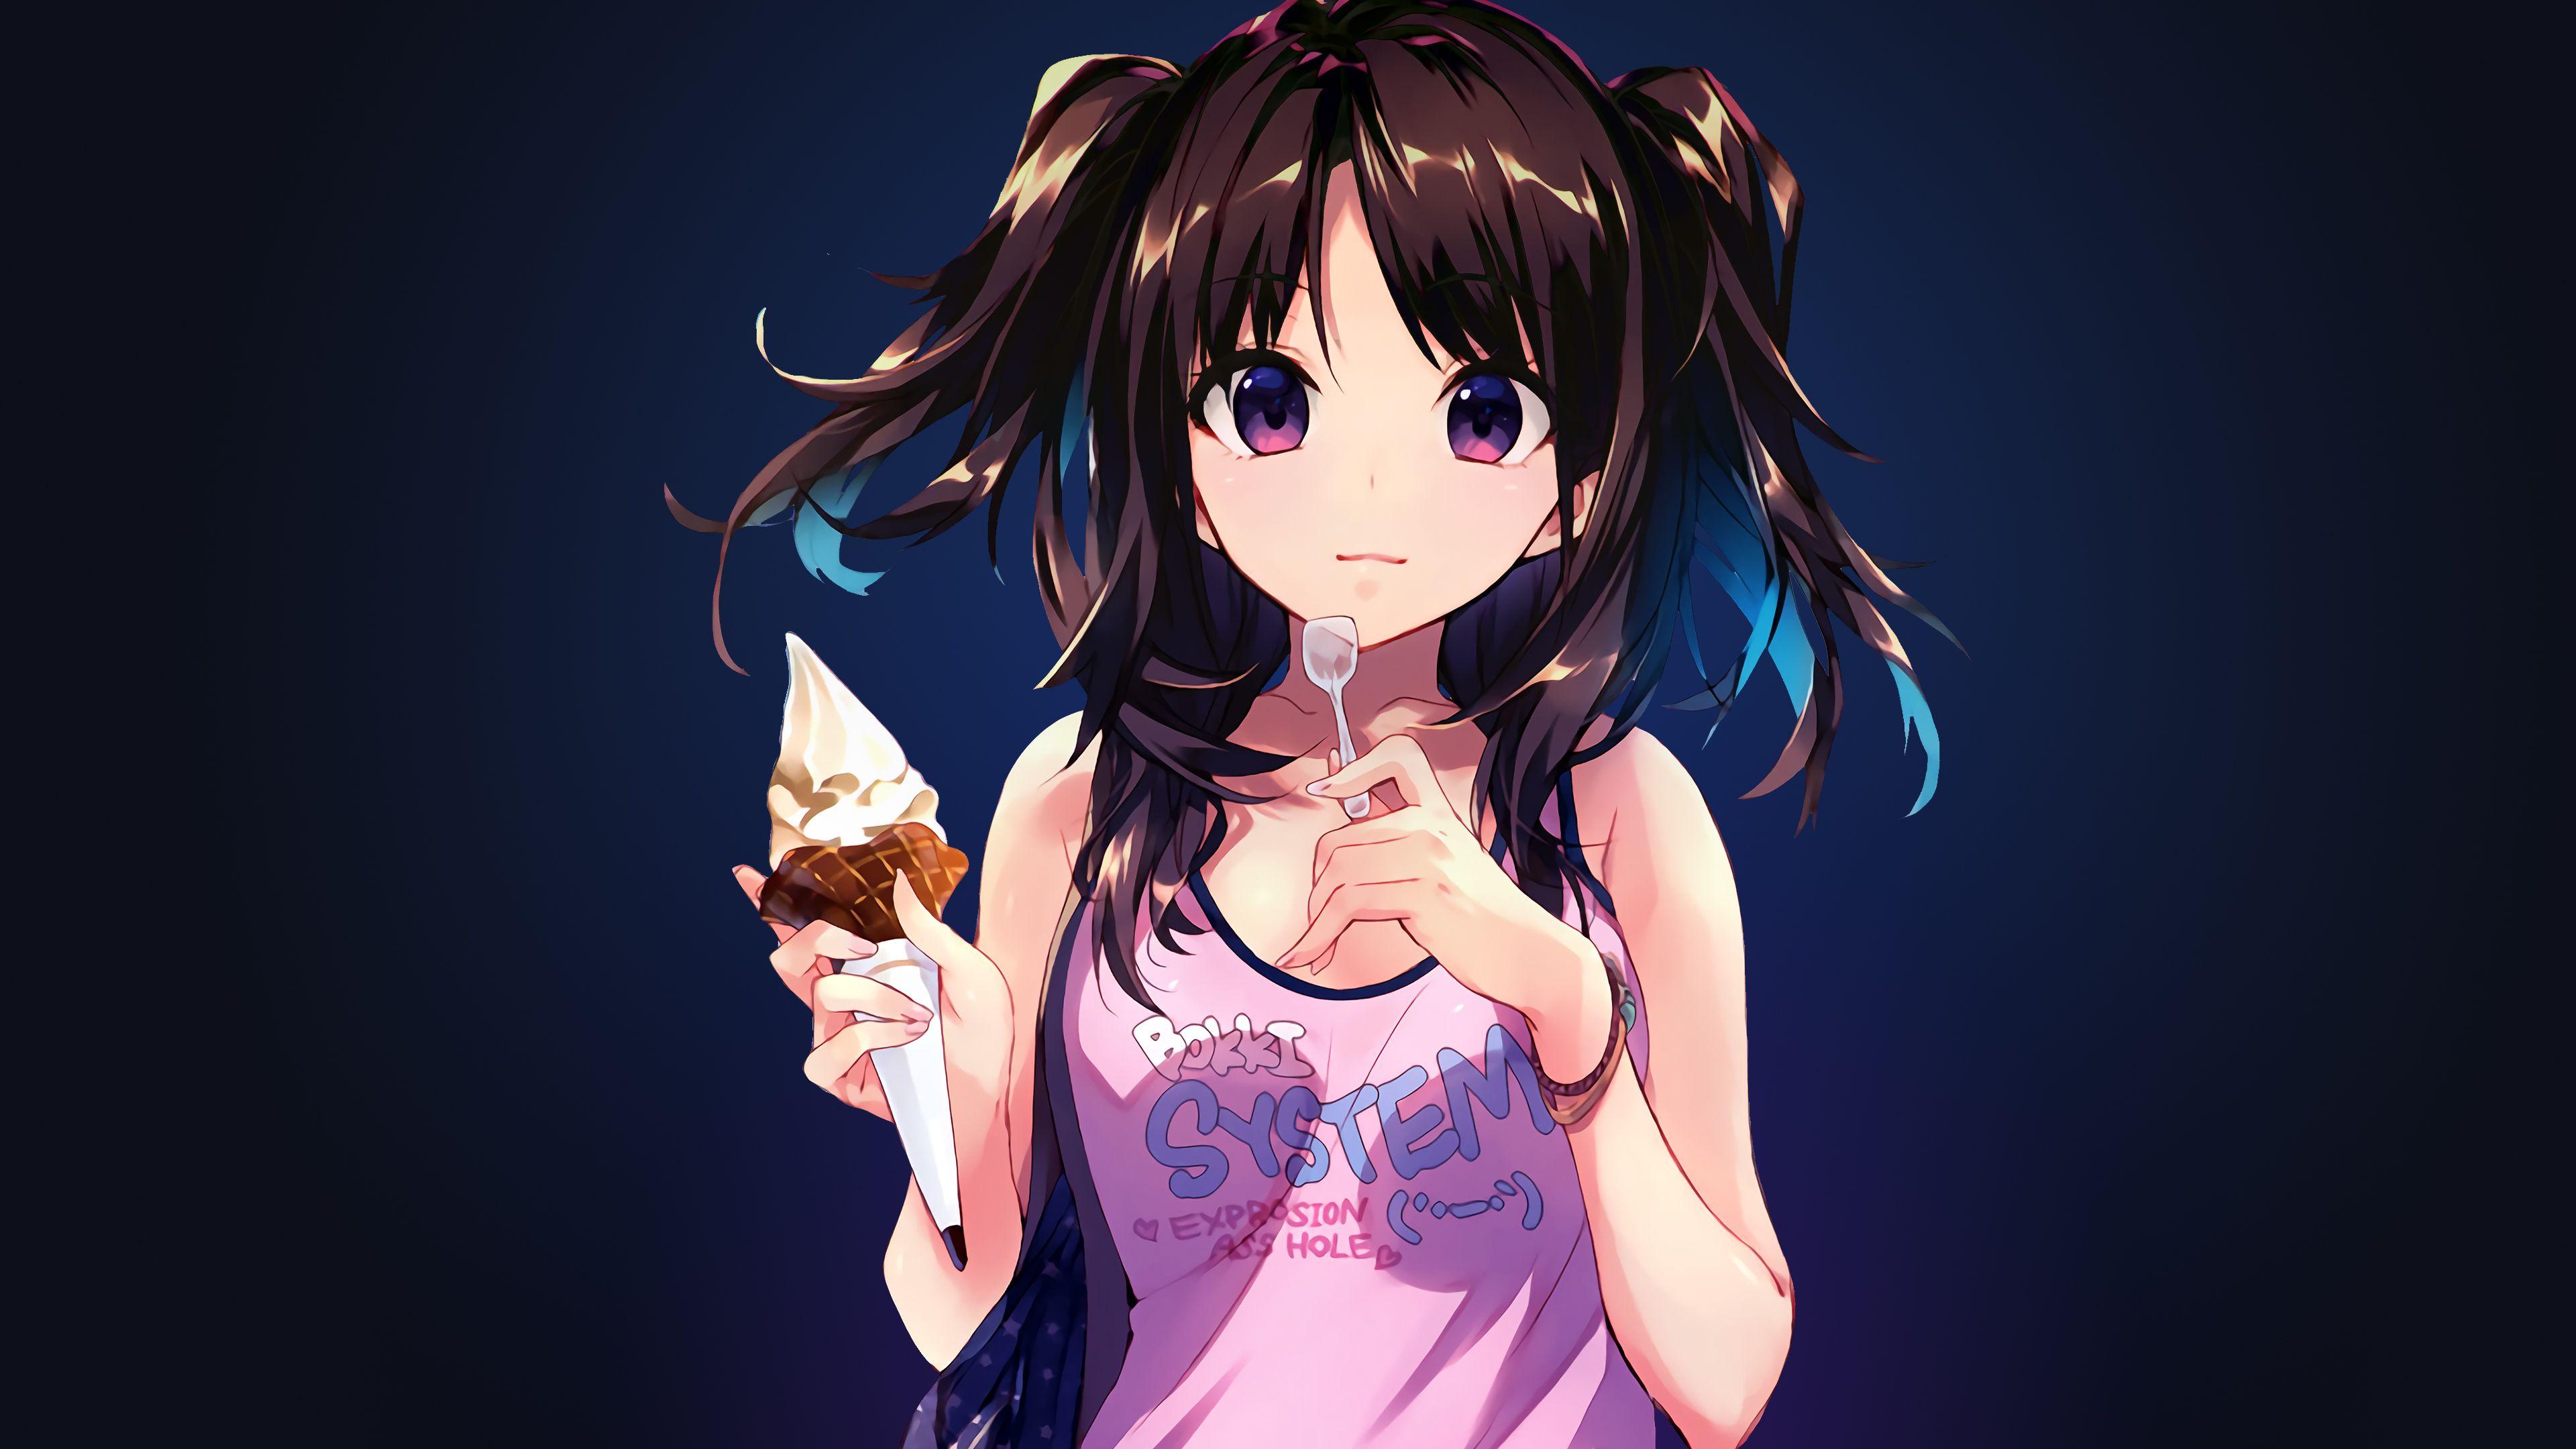 Anime Girl Wallpaper Desktop gambar ke 2